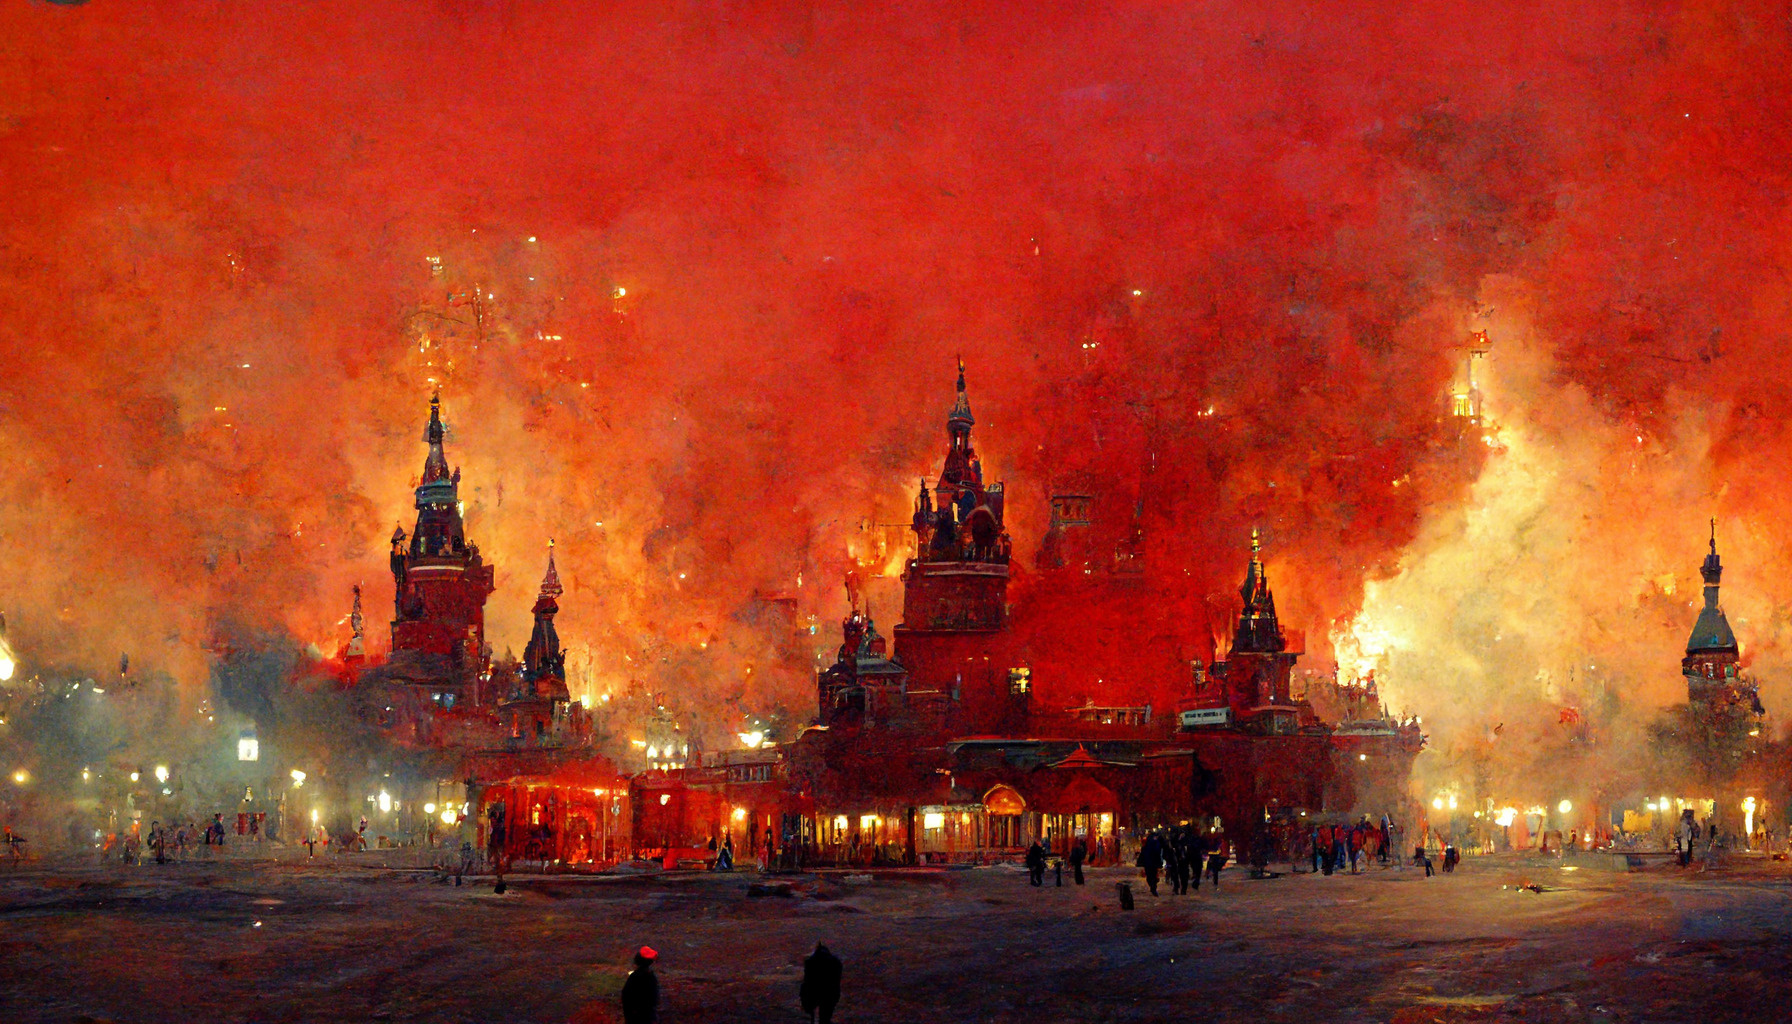 На этом фото легко можно узнать главные достопримечательности российской столицы